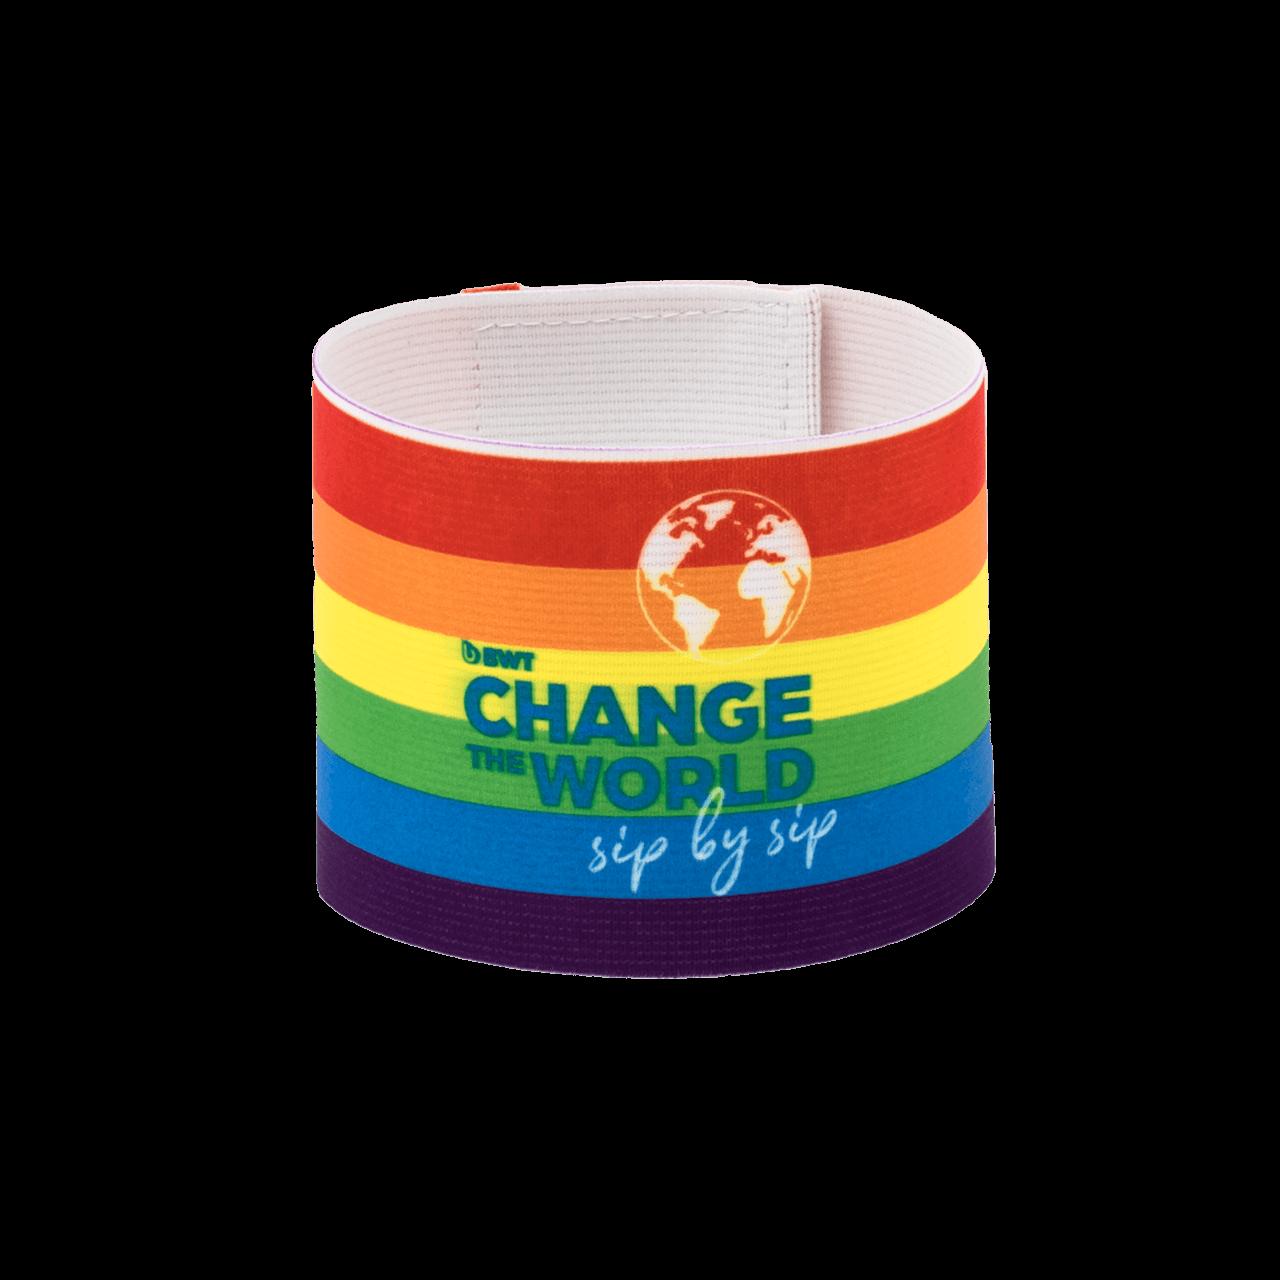 Fascia da capitano BWT Colorata nei colori dell'arcobaleno con il logo Change the World